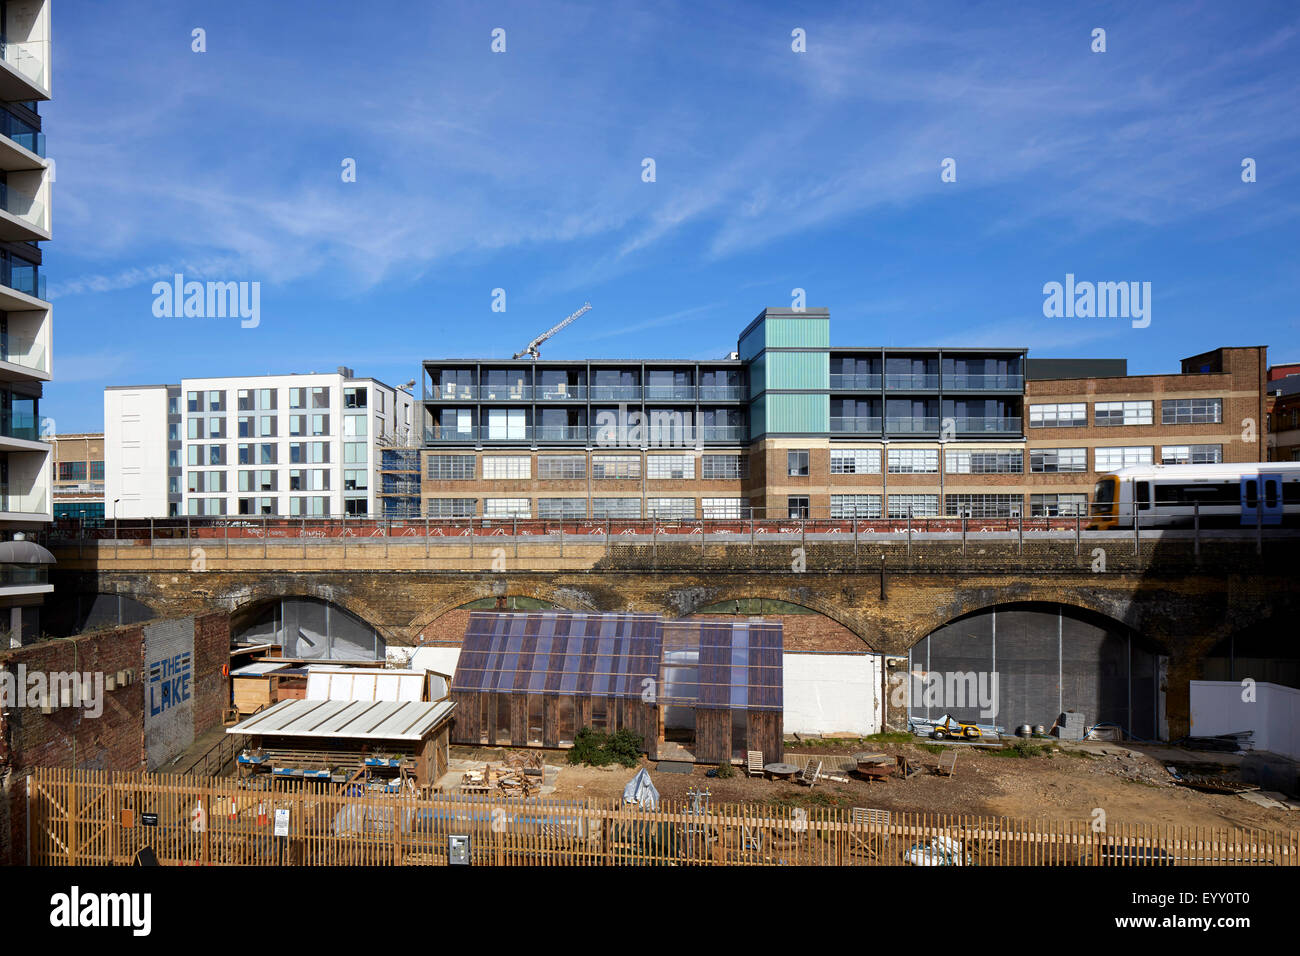 Nel complesso vista esterna da una distanza. La scatola di metallo, Londra, Regno Unito. Architetto: Pringle Richards Sharratt Ltd, 2015. Foto Stock